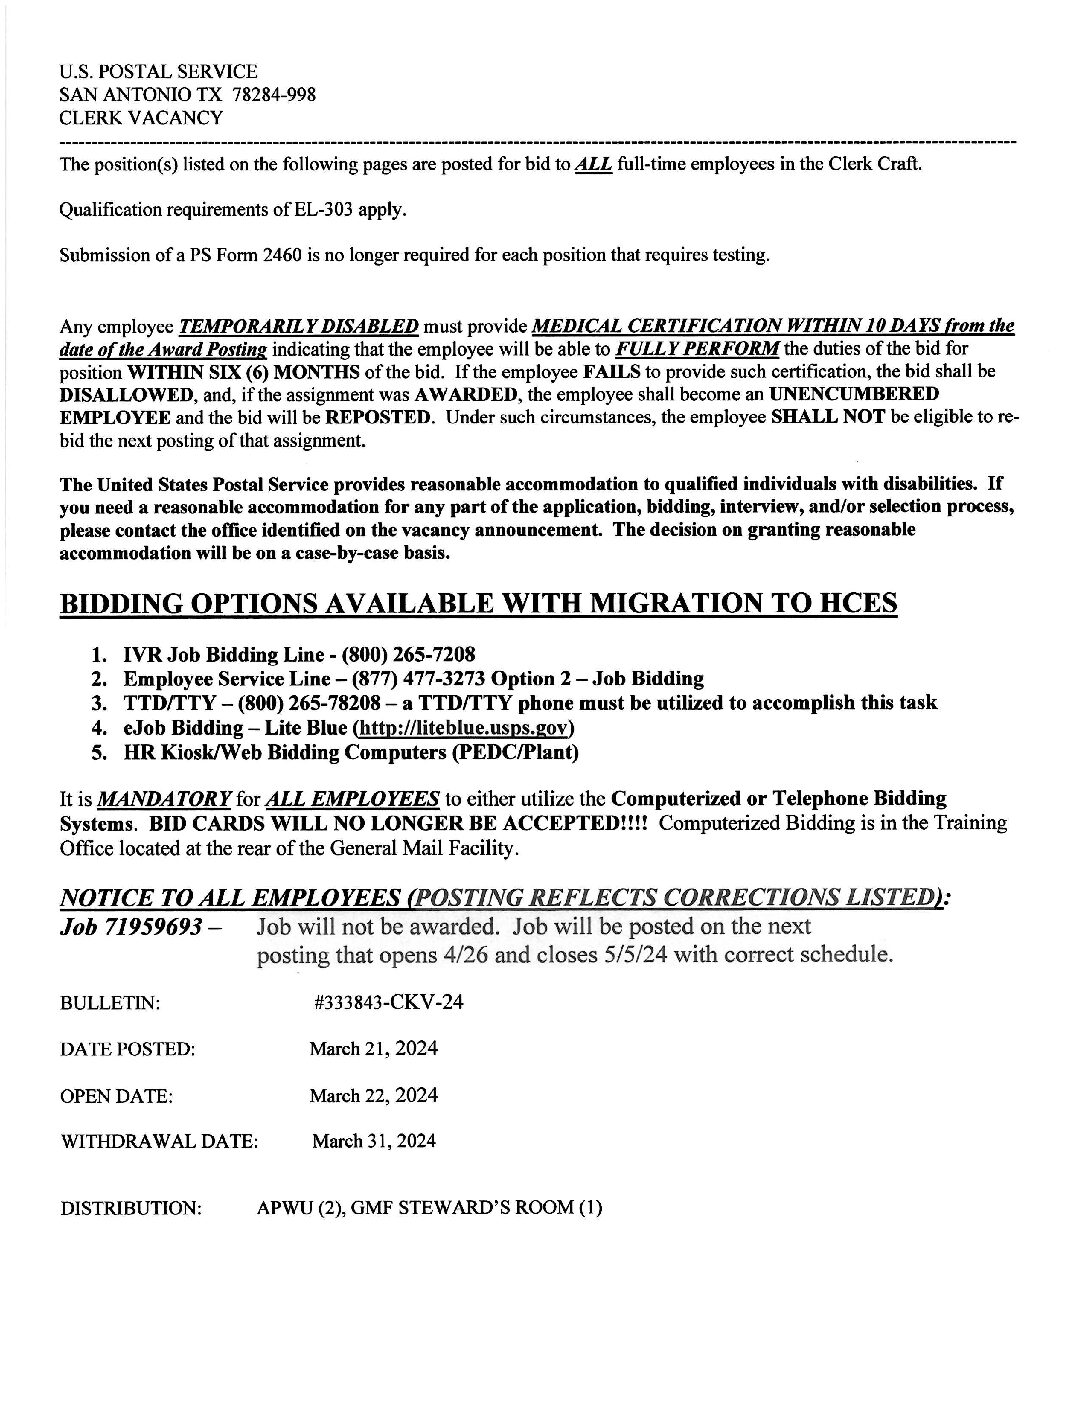 E-Flash Clerk Job Vacancy Bulletin 3/21/2024 - 